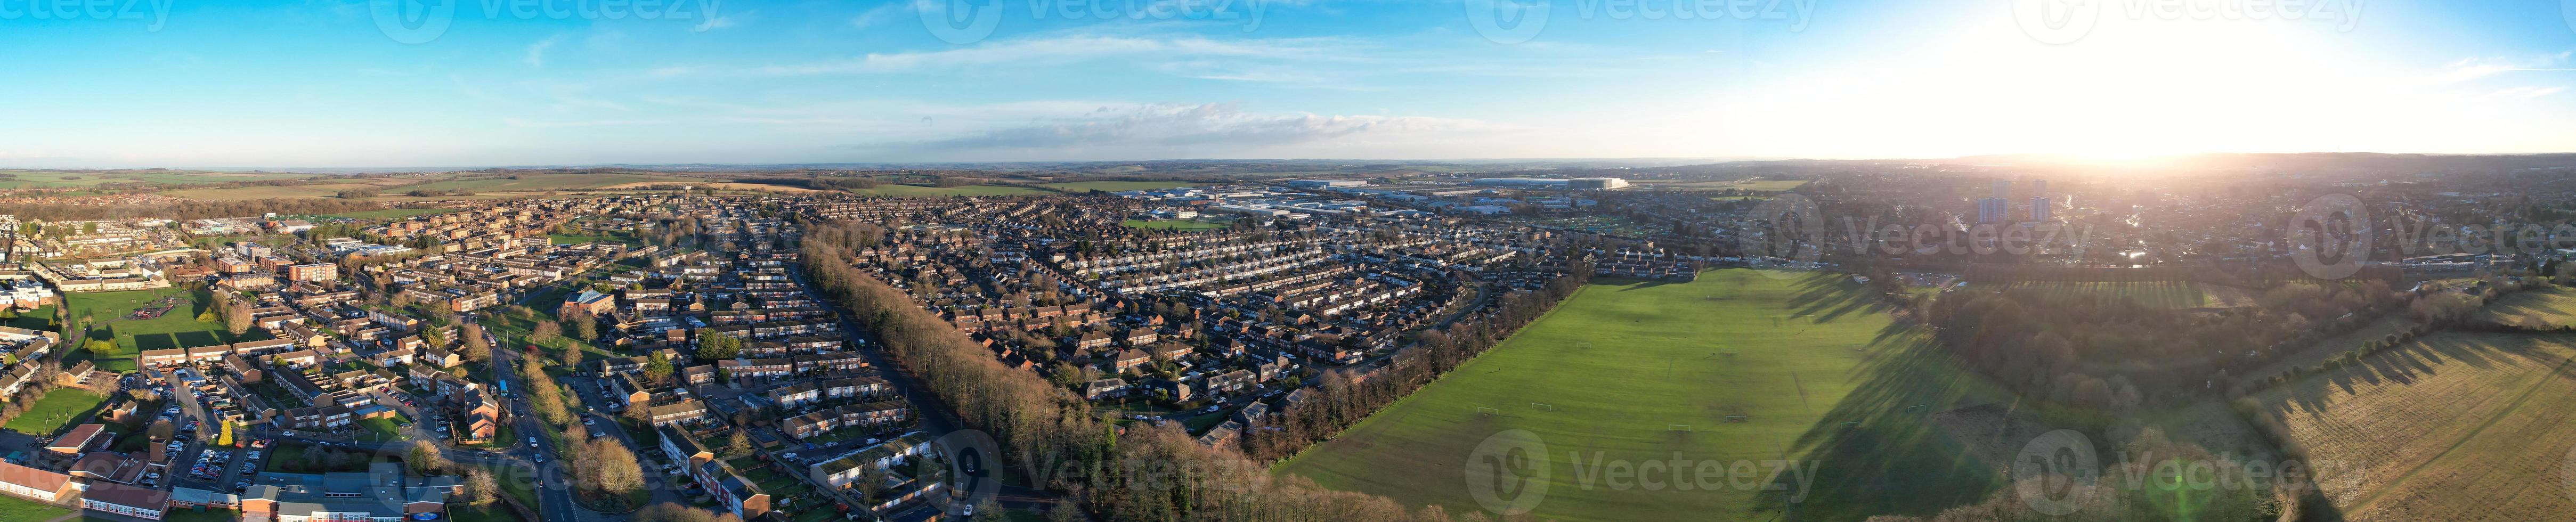 hermosa vista aérea de la ciudad de luton, ciudad de inglaterra, justo antes del atardecer foto